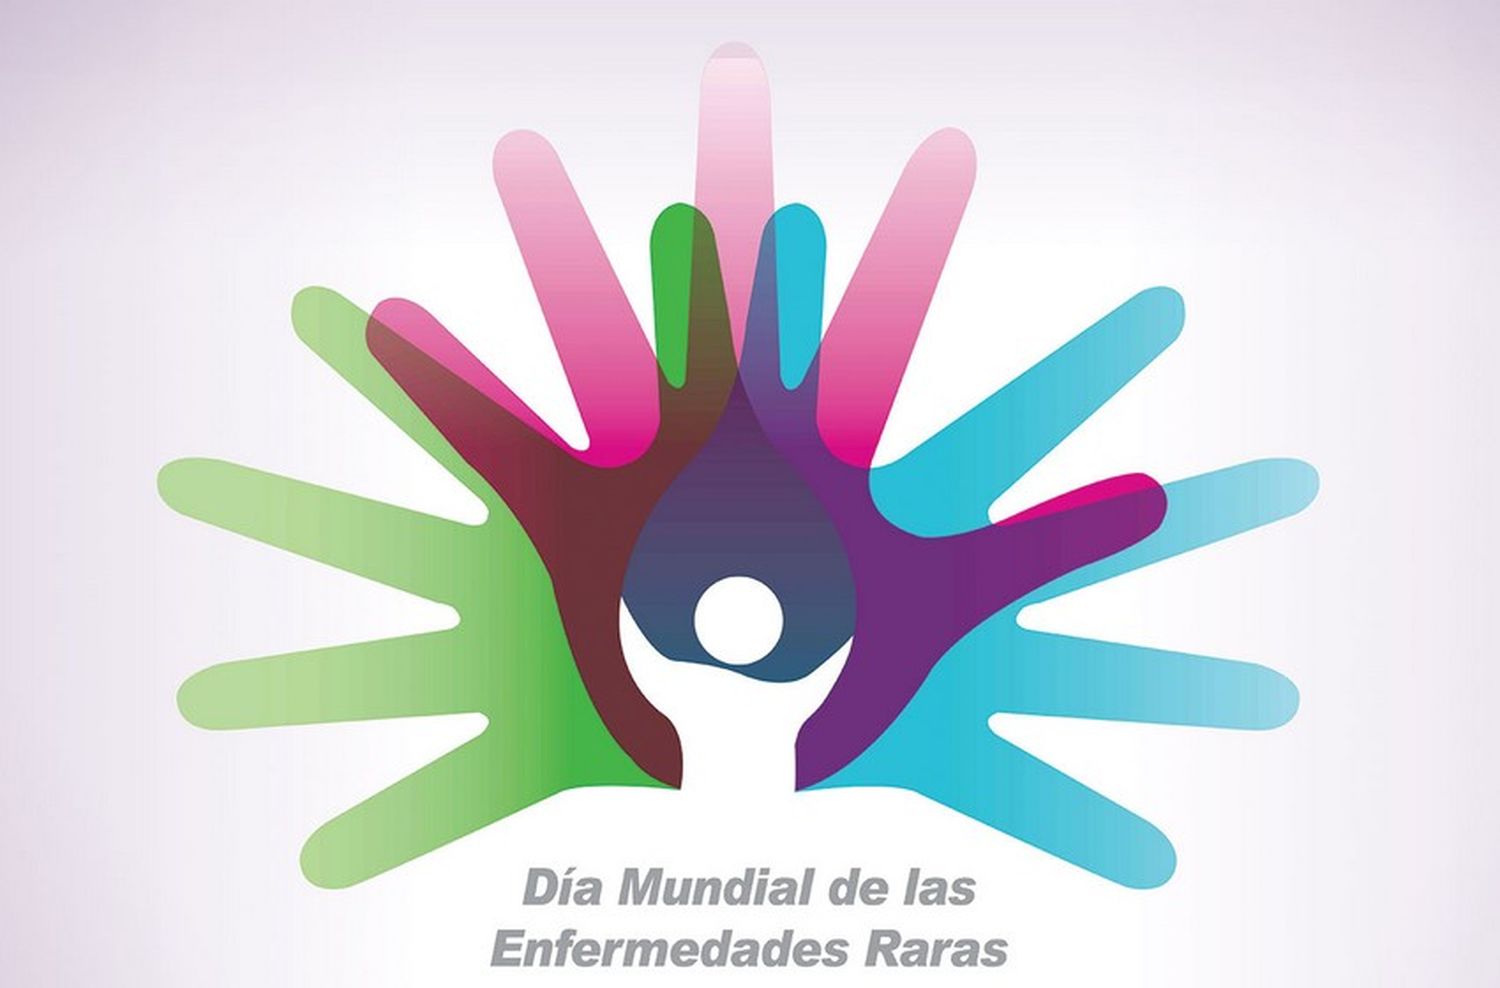 Día Internacional de las Enfermedades Raras: en Argentina afectan a 1 de cada 2000 personas